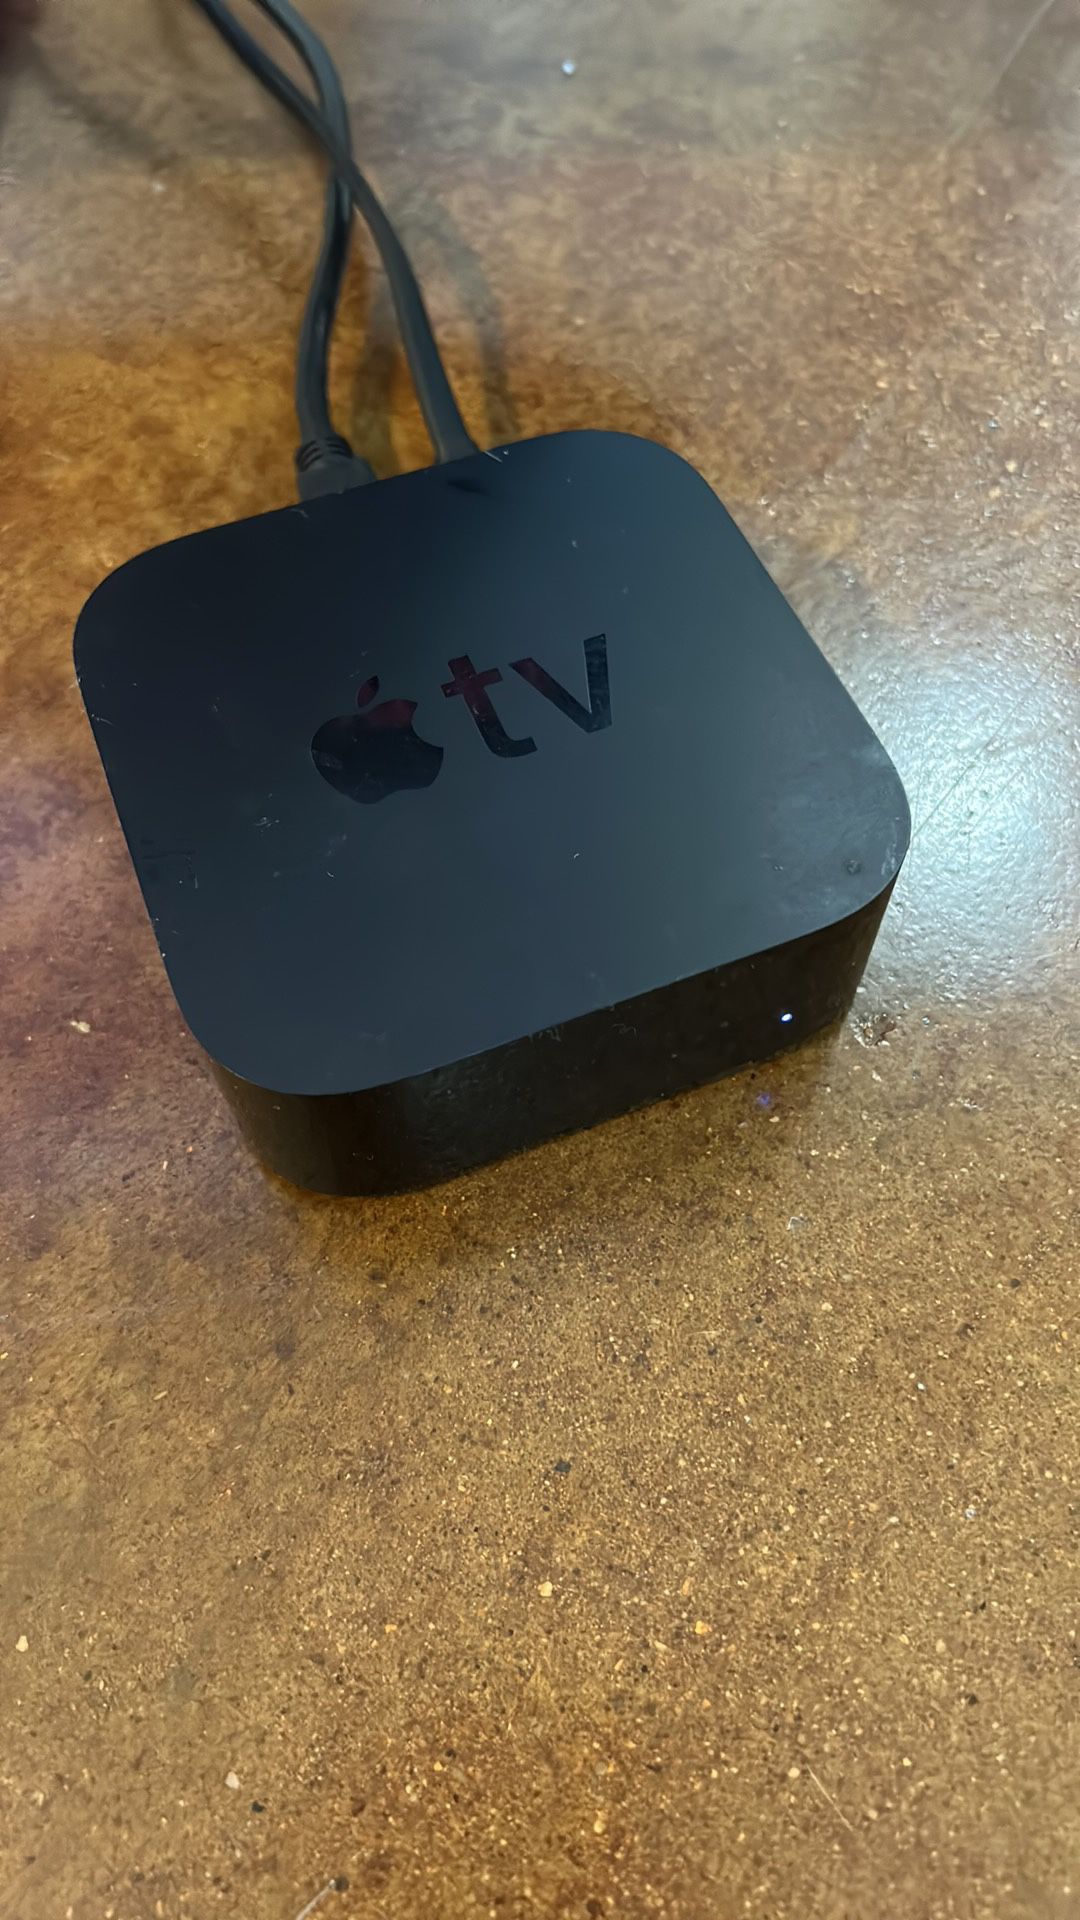 Apple Tv Plus Remote 